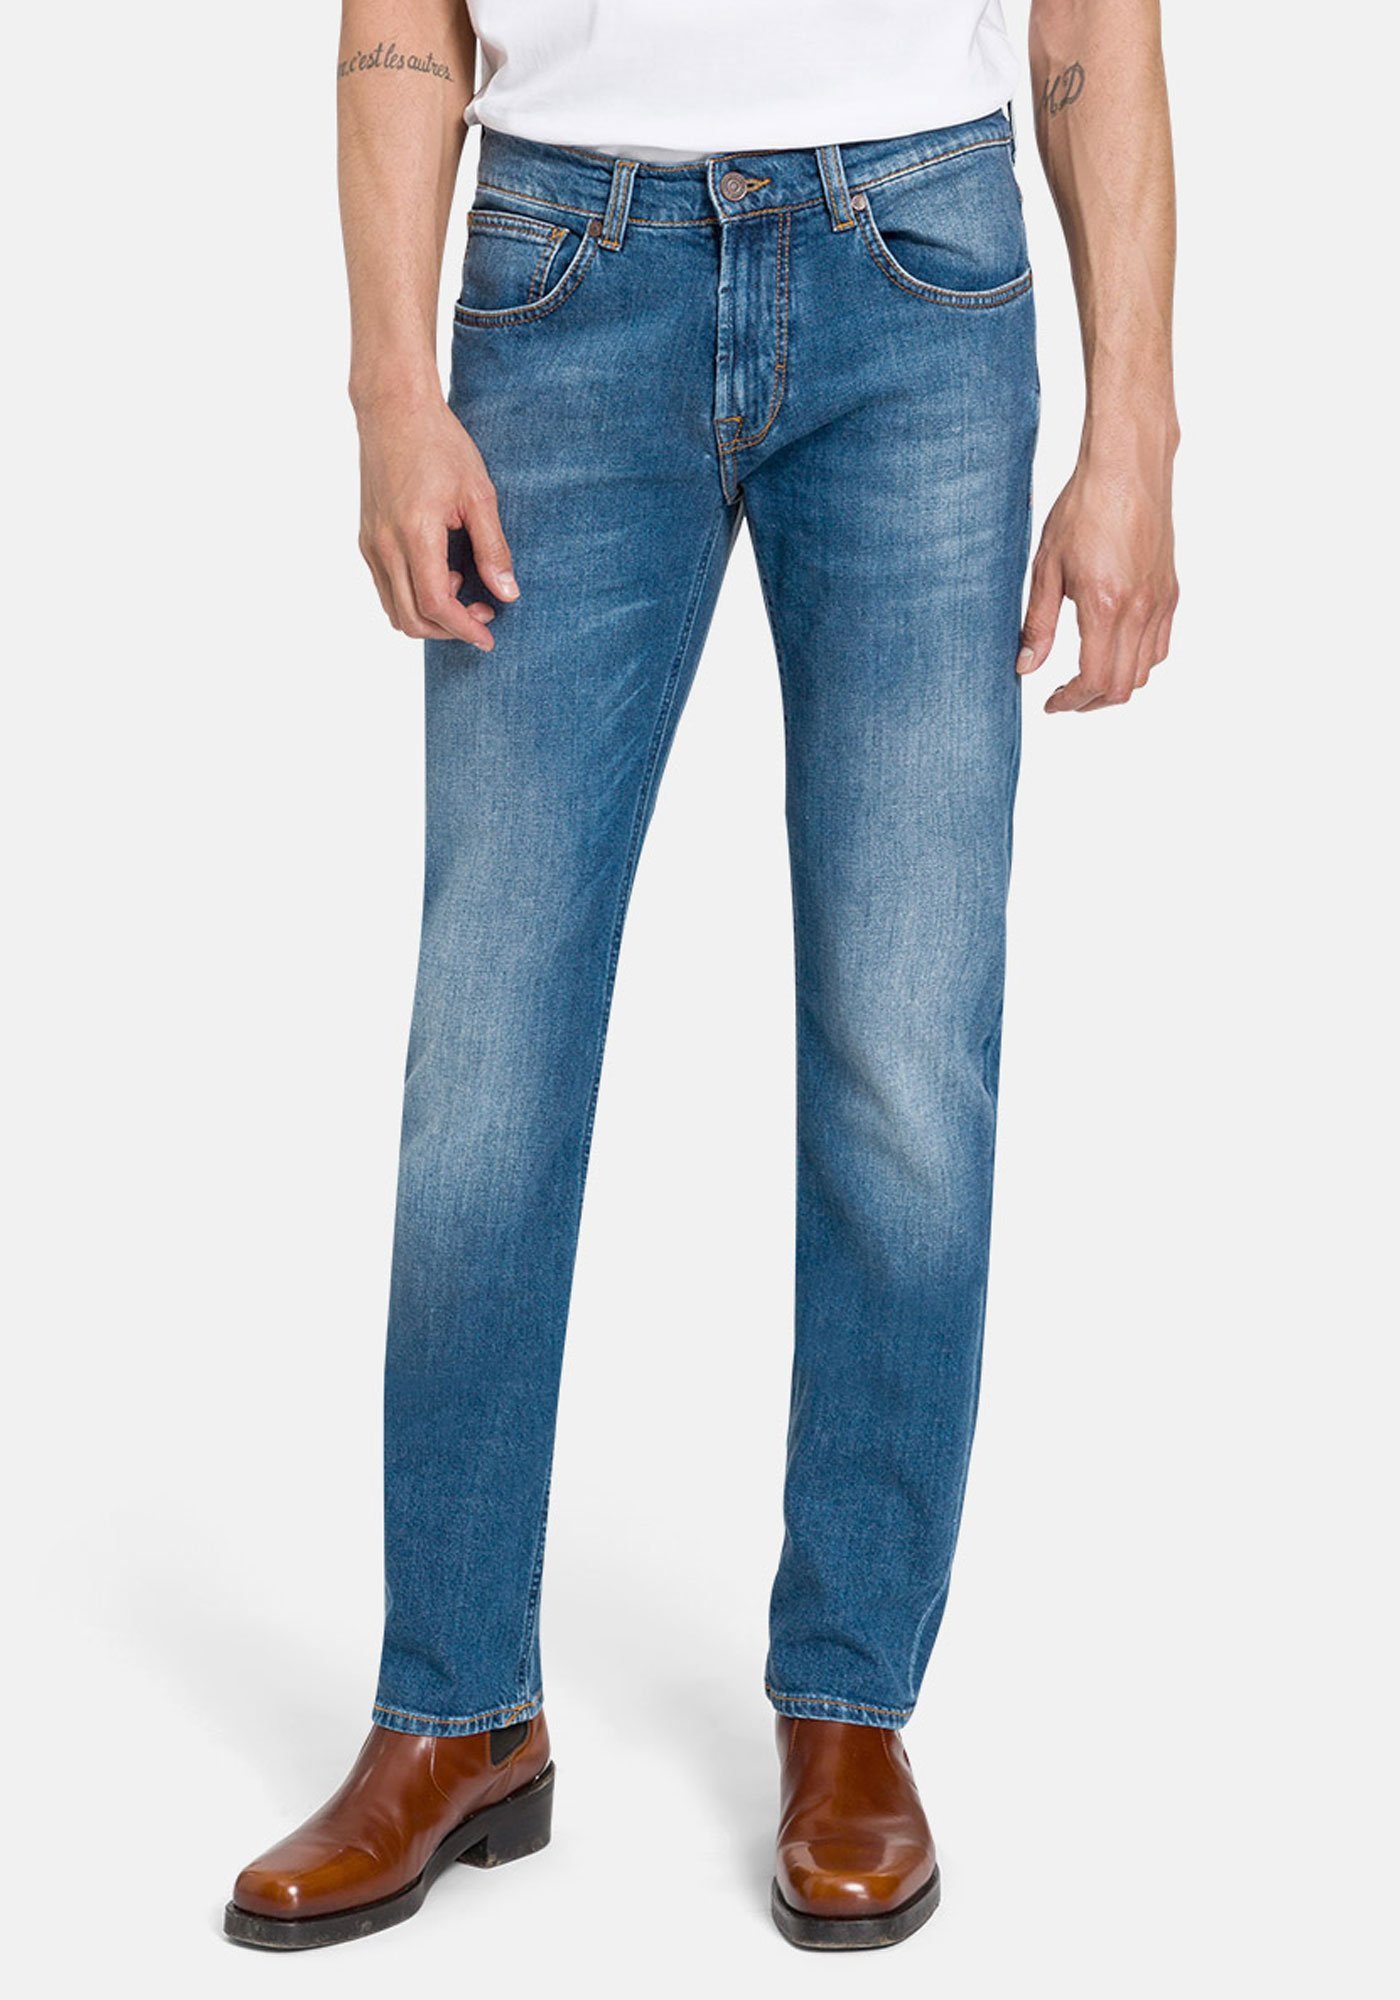 BALDESSARINI 5-Pocket-Jeans John Tribute To Nature Candiani Denim blue fashion